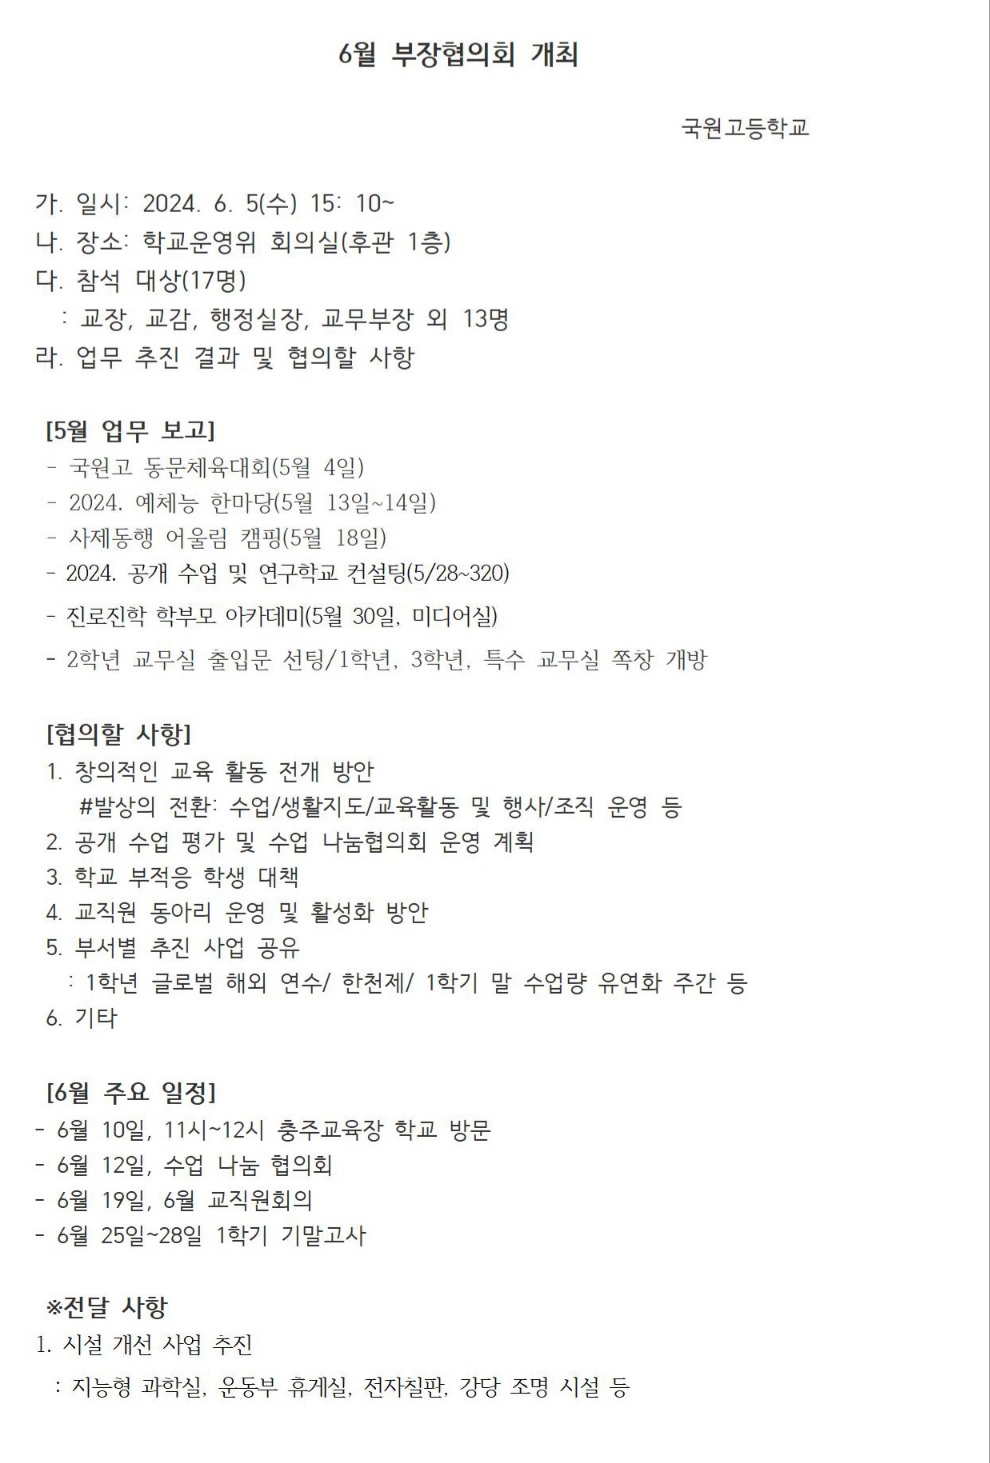 [안내] 6월 부장협의회 개최(24. 6. 5)